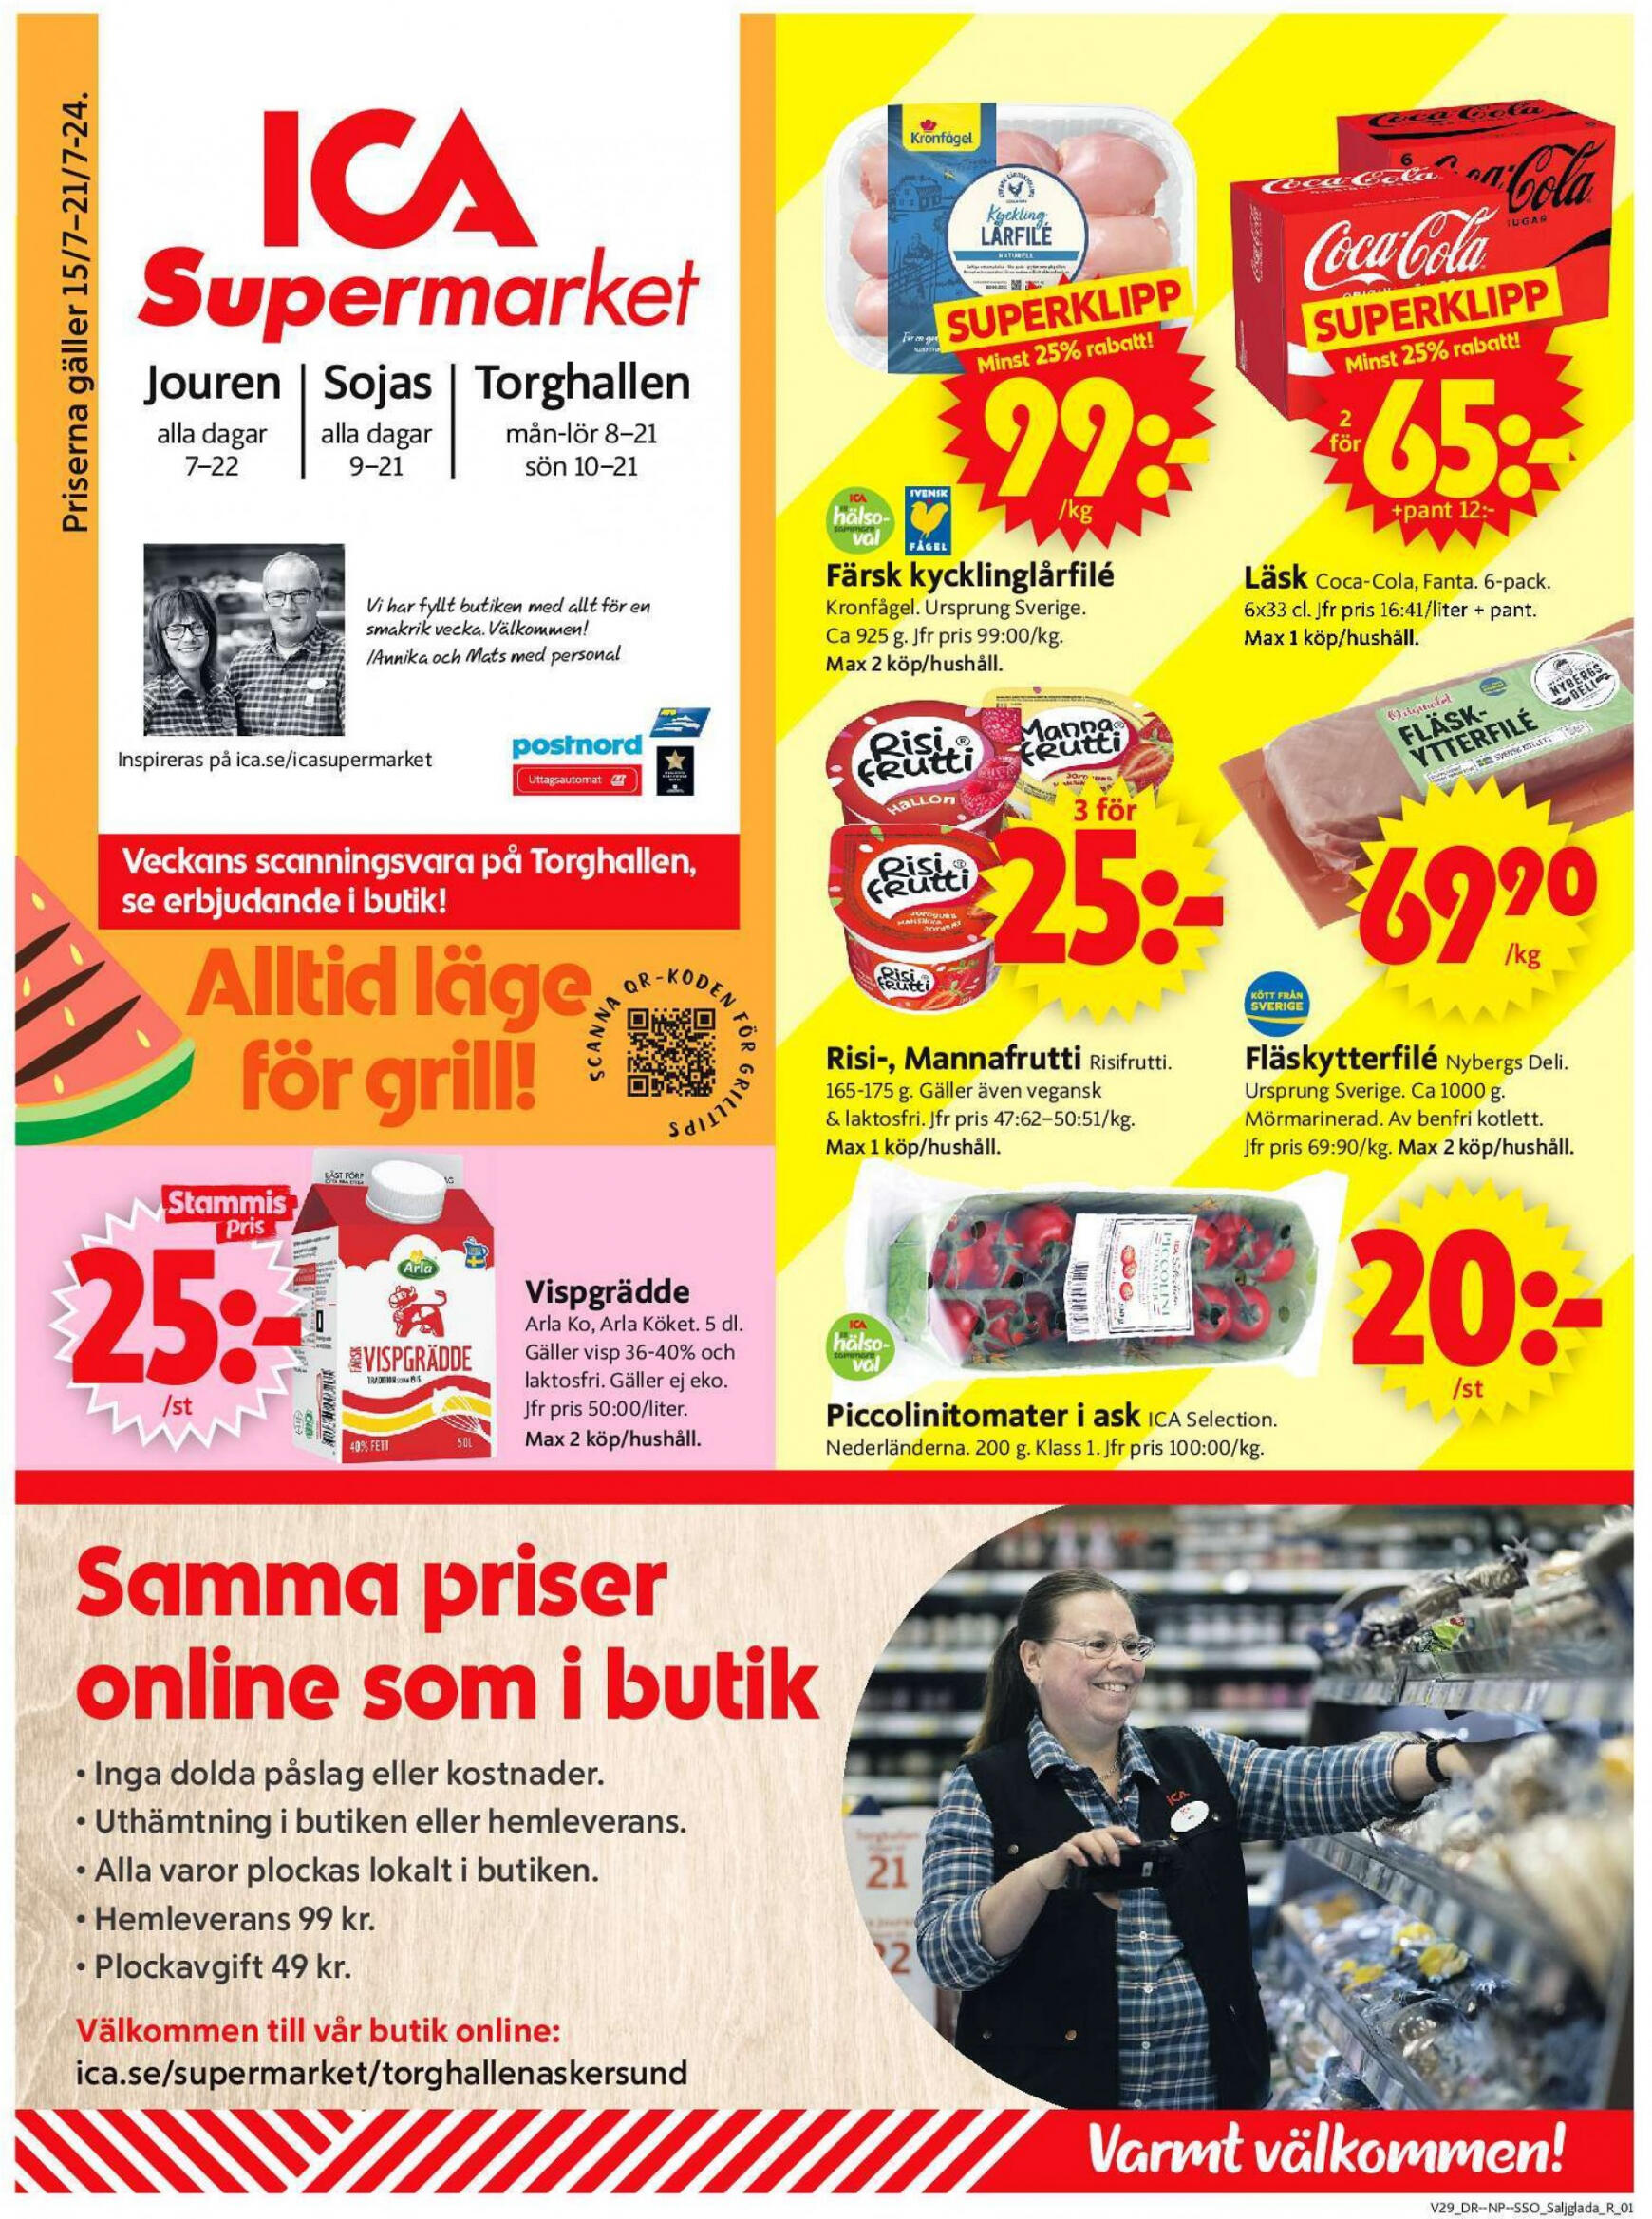 ica-supermarket - Flyer ICA Supermarket current 15.07. - 21.07.